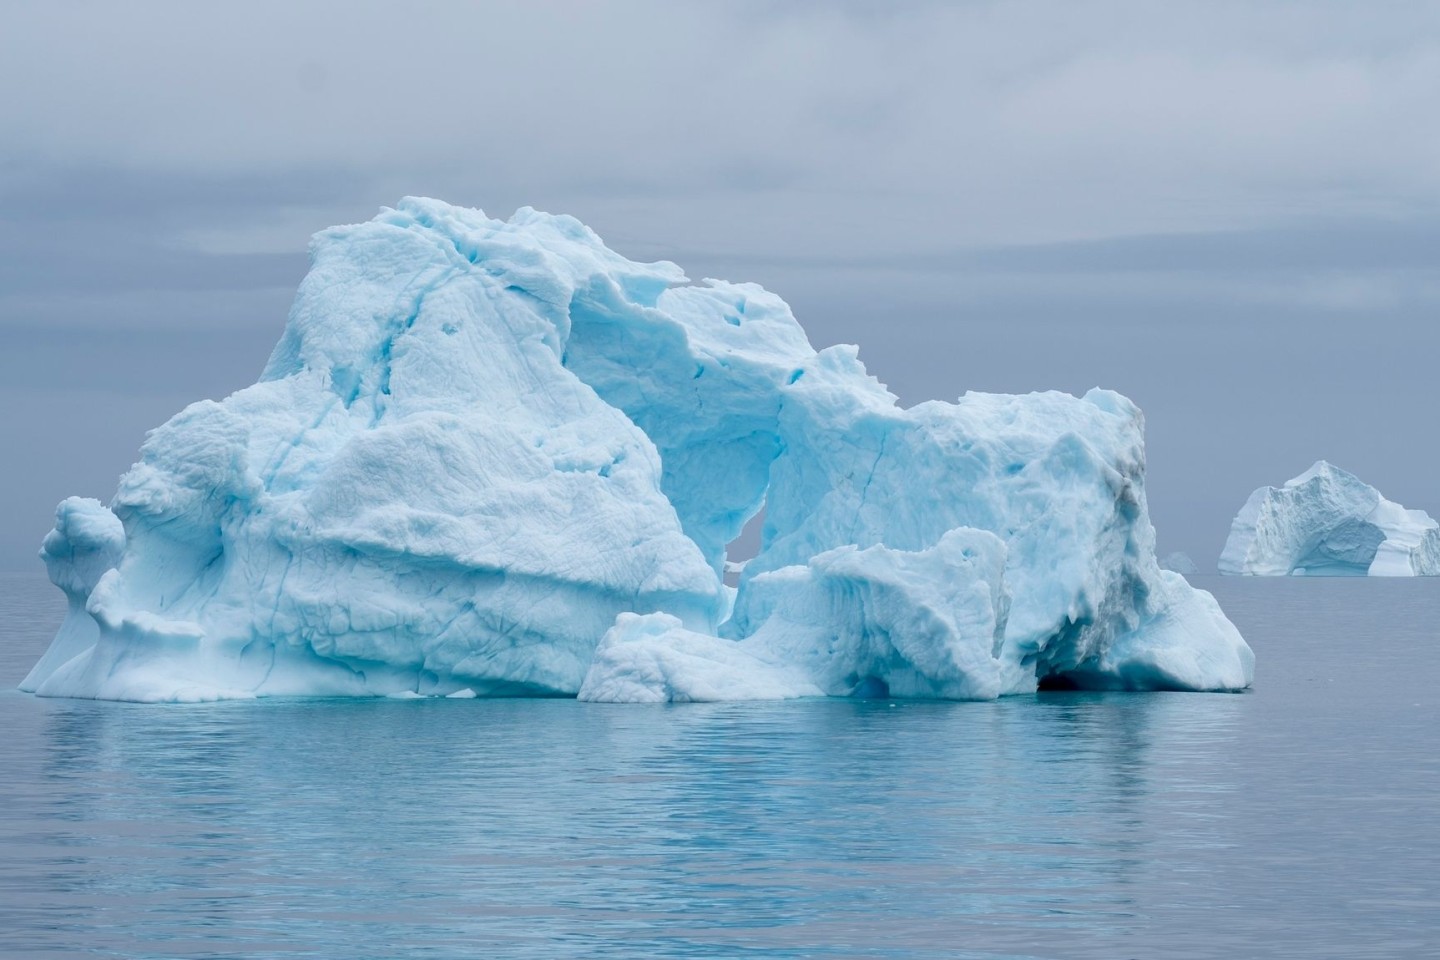 Eisberge treiben im Scoresby Sund von Grönland.